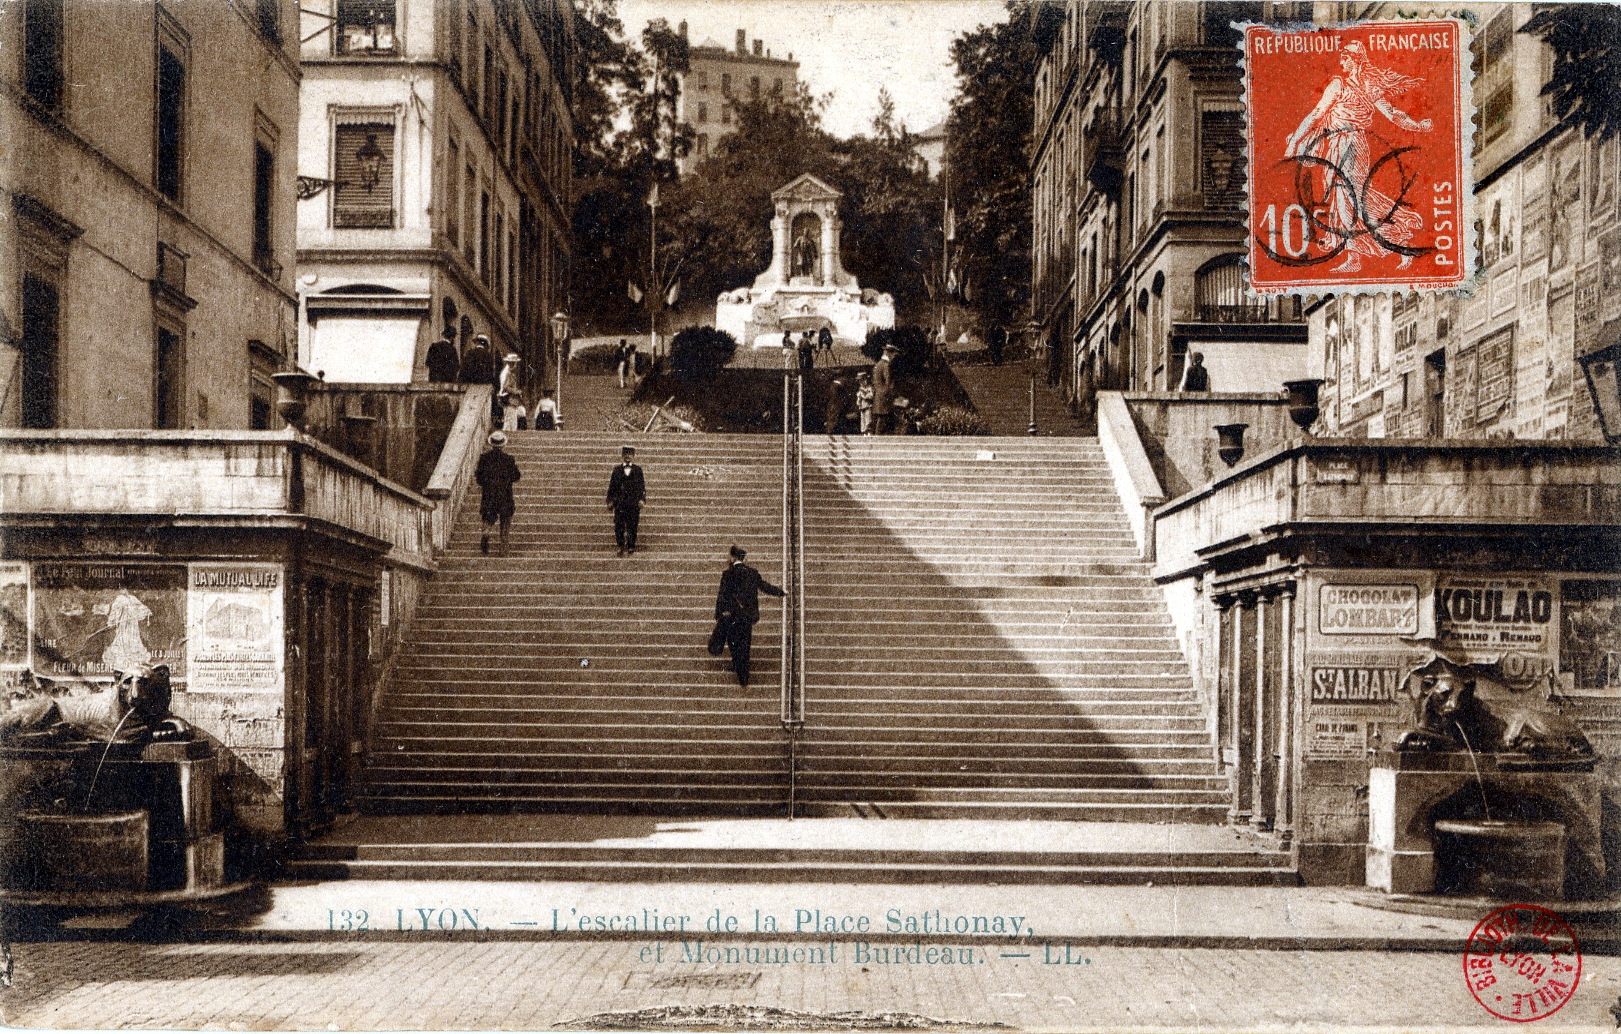 LYON : L' Escalier de la Place Sathonay et Monument Burdeau